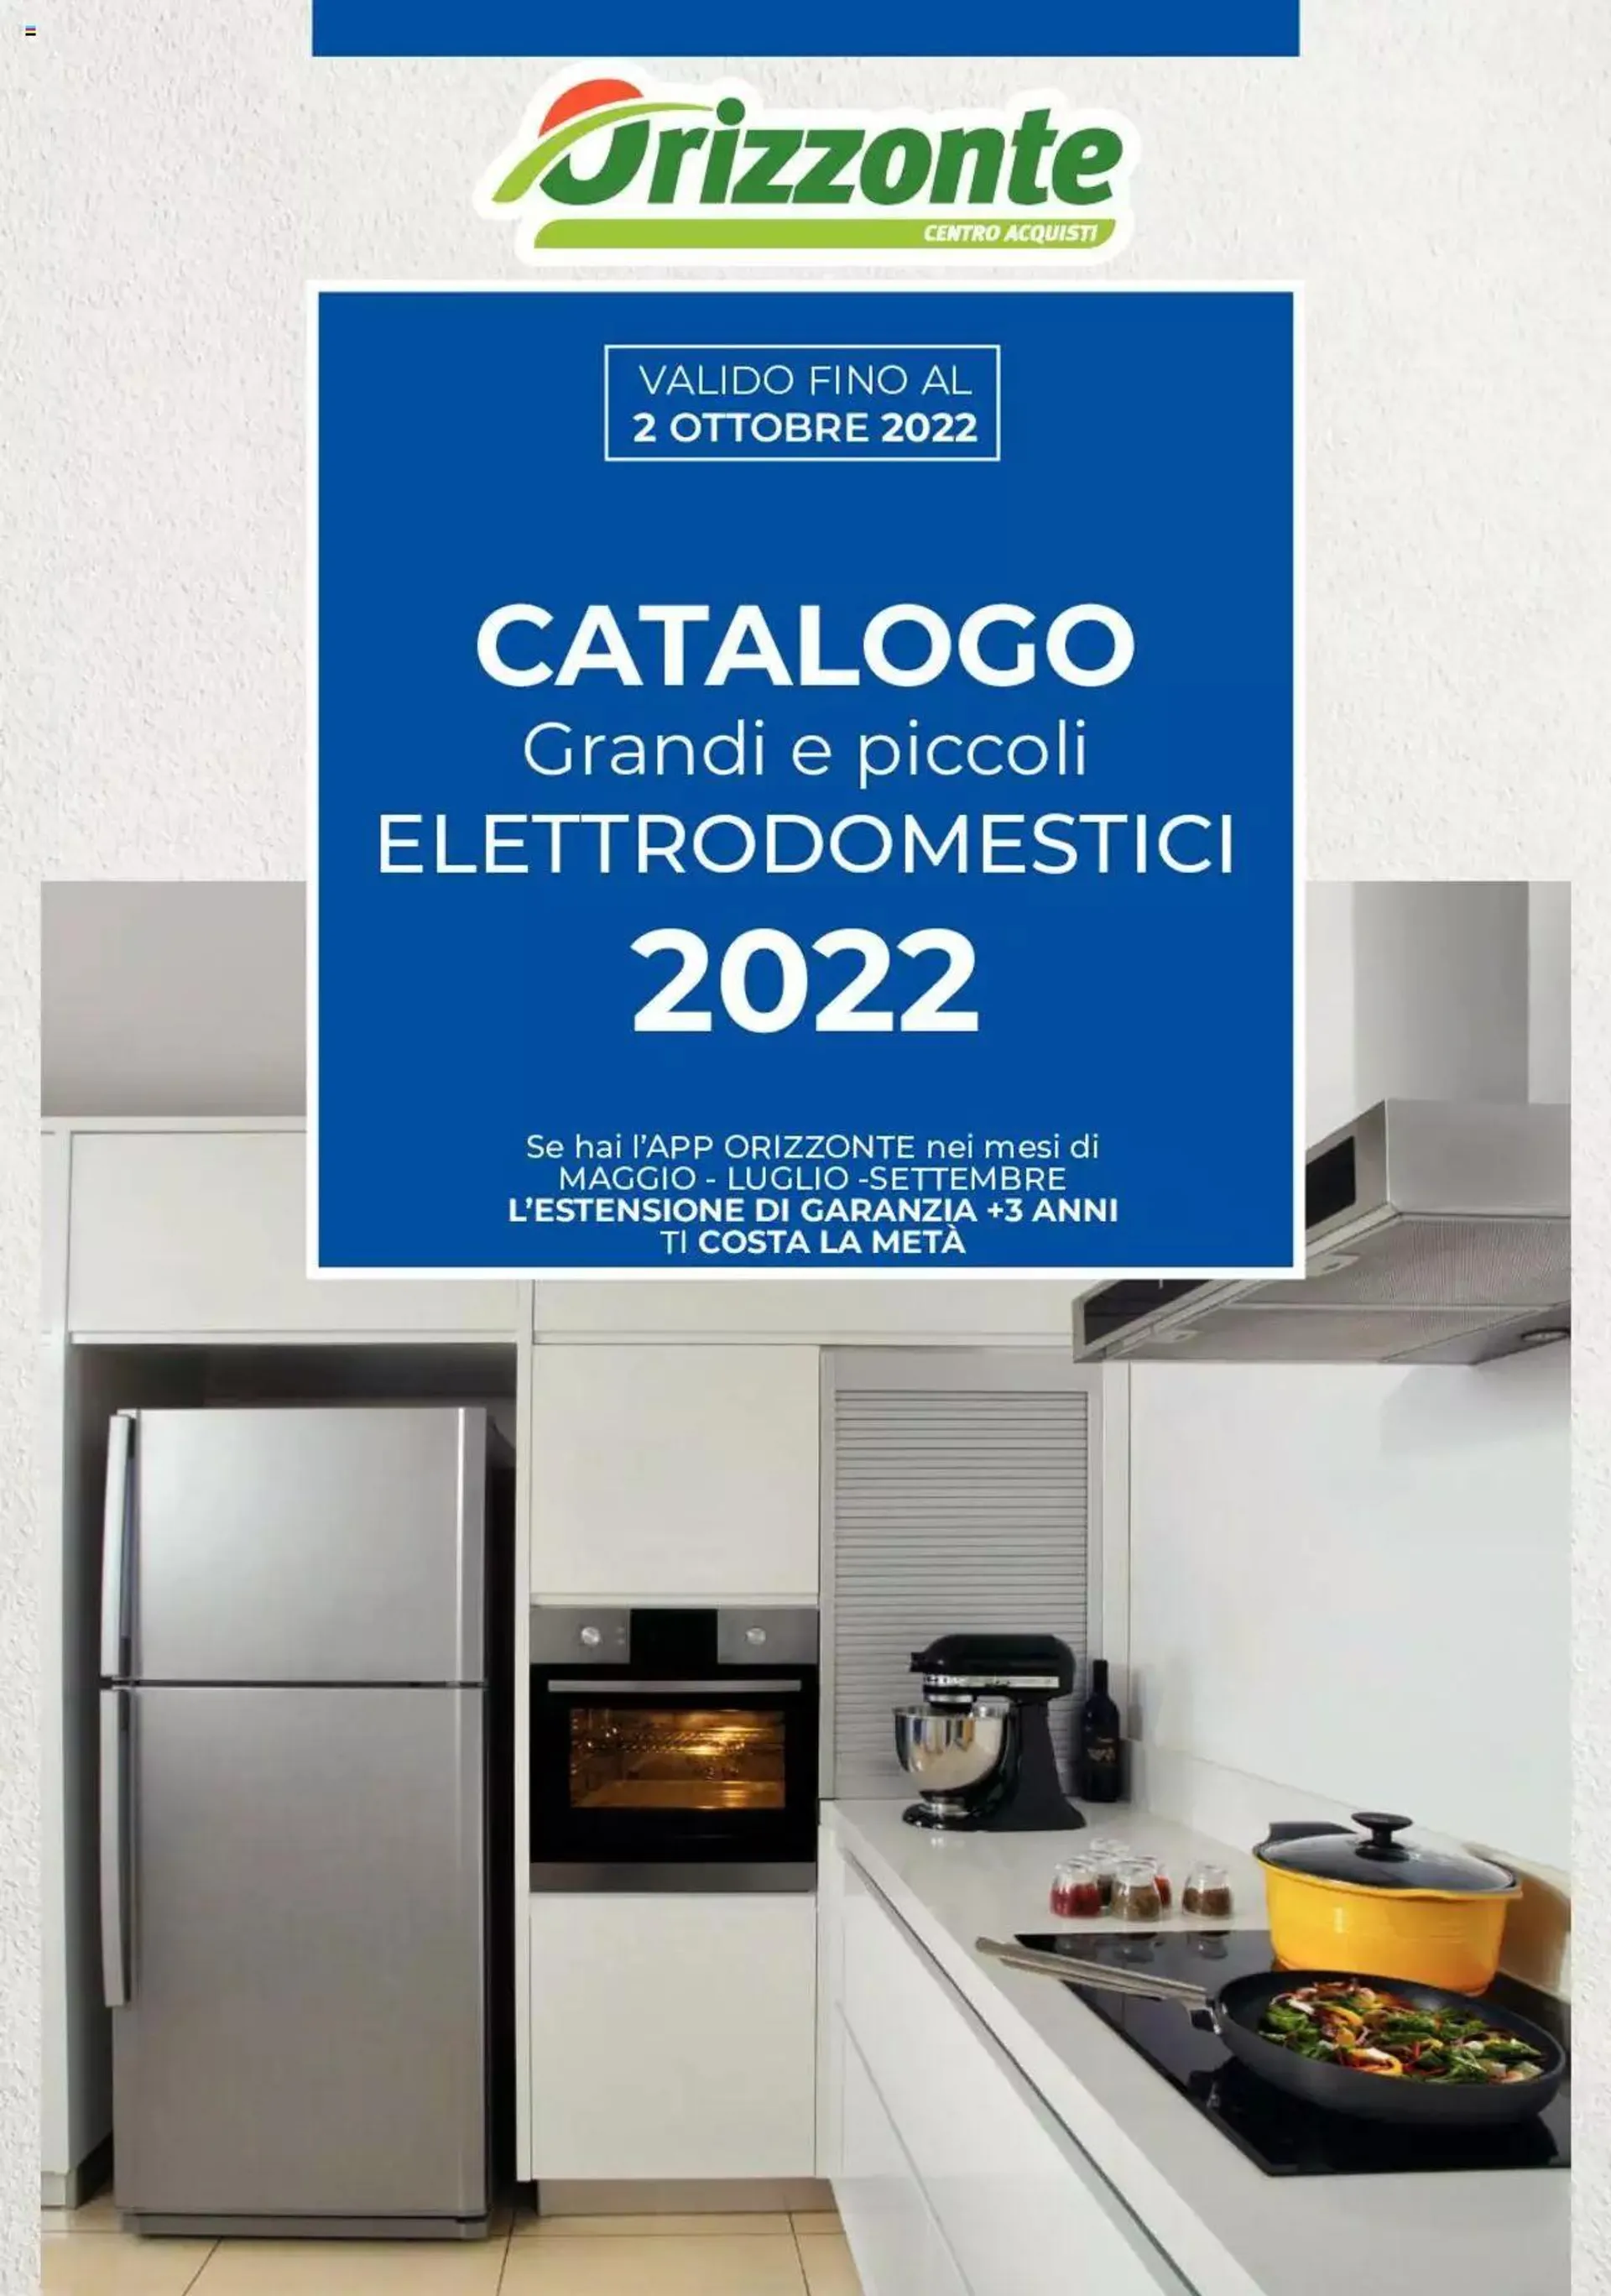 Orizzonte - Catalogo Elettrodomestici 2022 da 3 maggio a 2 ottobre di 2022 - Pagina del volantino 1